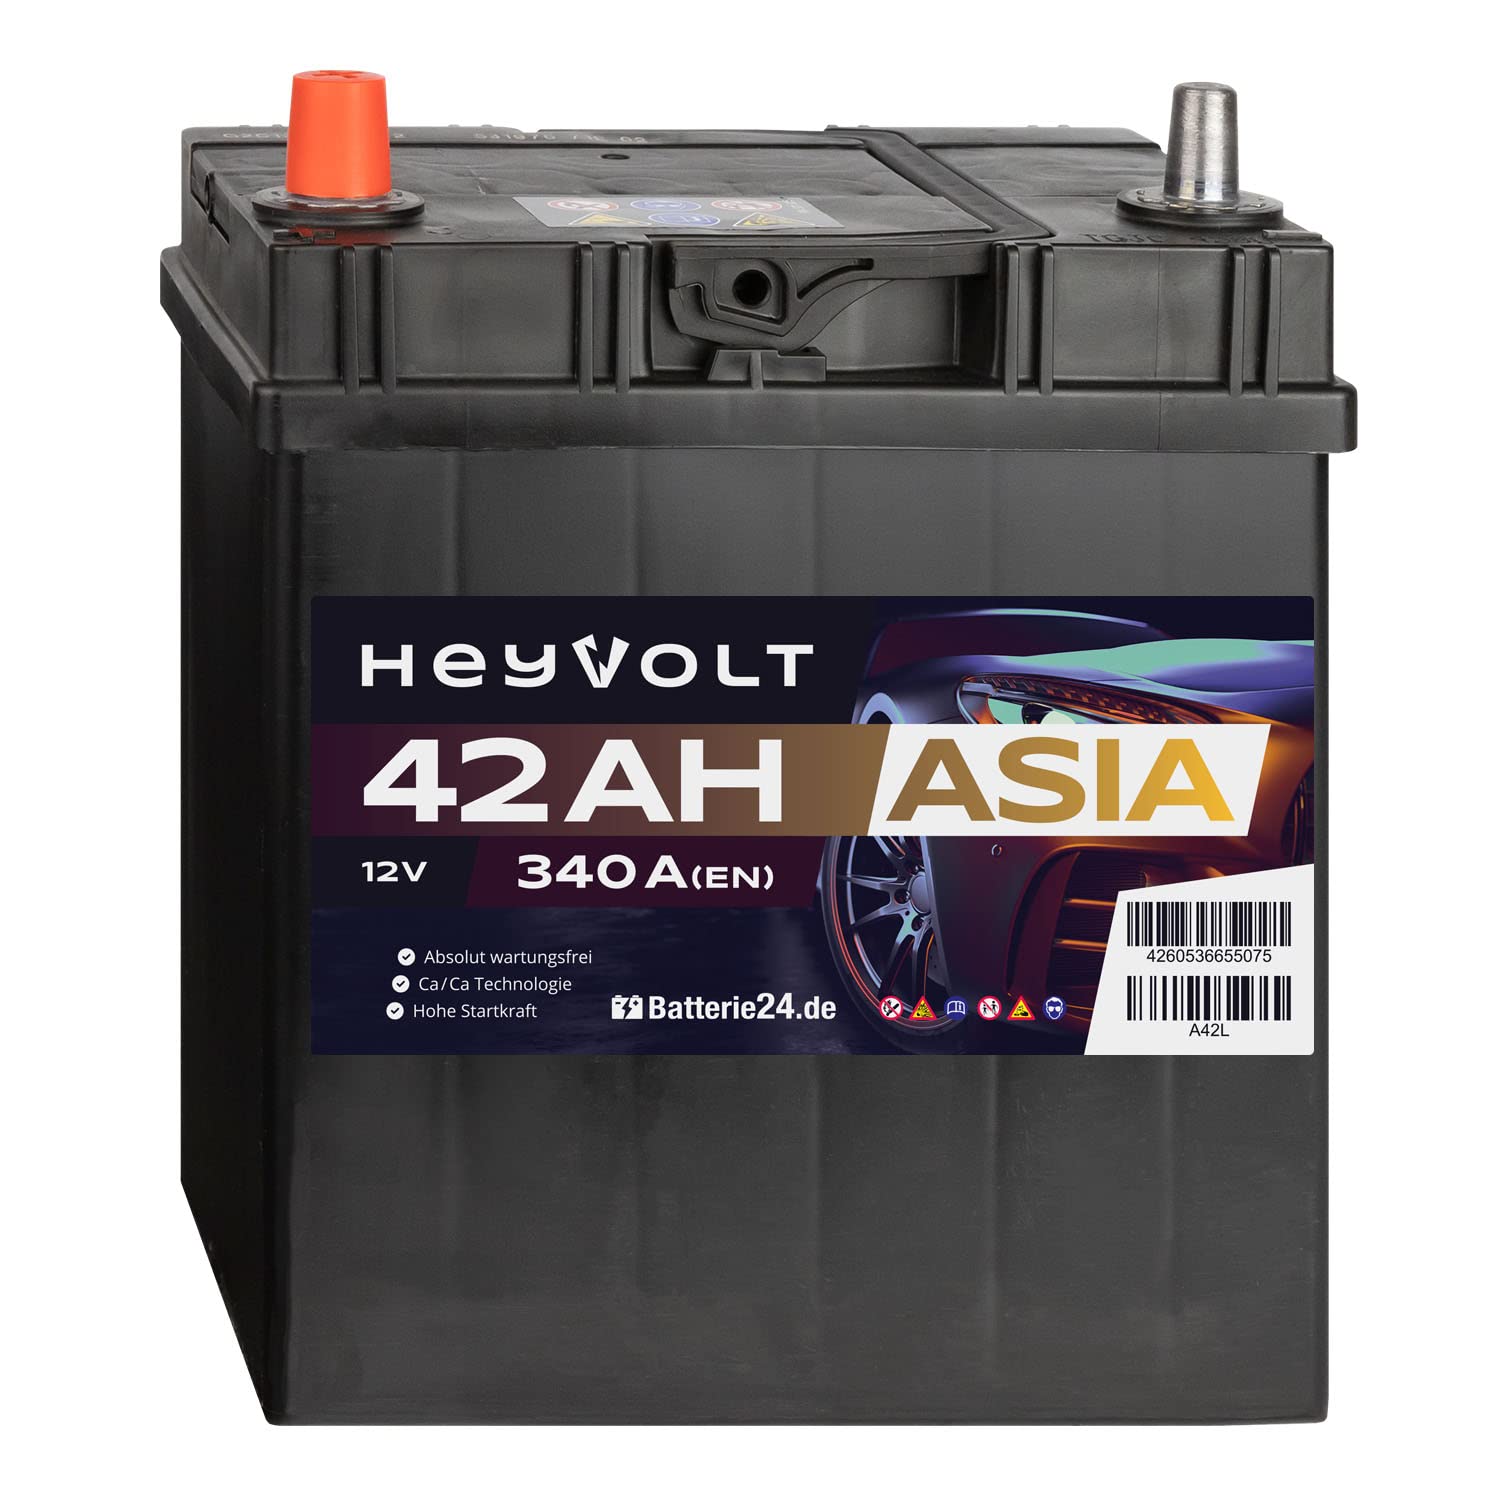 HeyVolt Asia Autobatterie 12V 42Ah 340A/EN Starterbatterie, absolut wartungsfrei ersetzt 35Ah 40Ah, Pluspol Rechts m. Bodenleiste von Batterie24.de